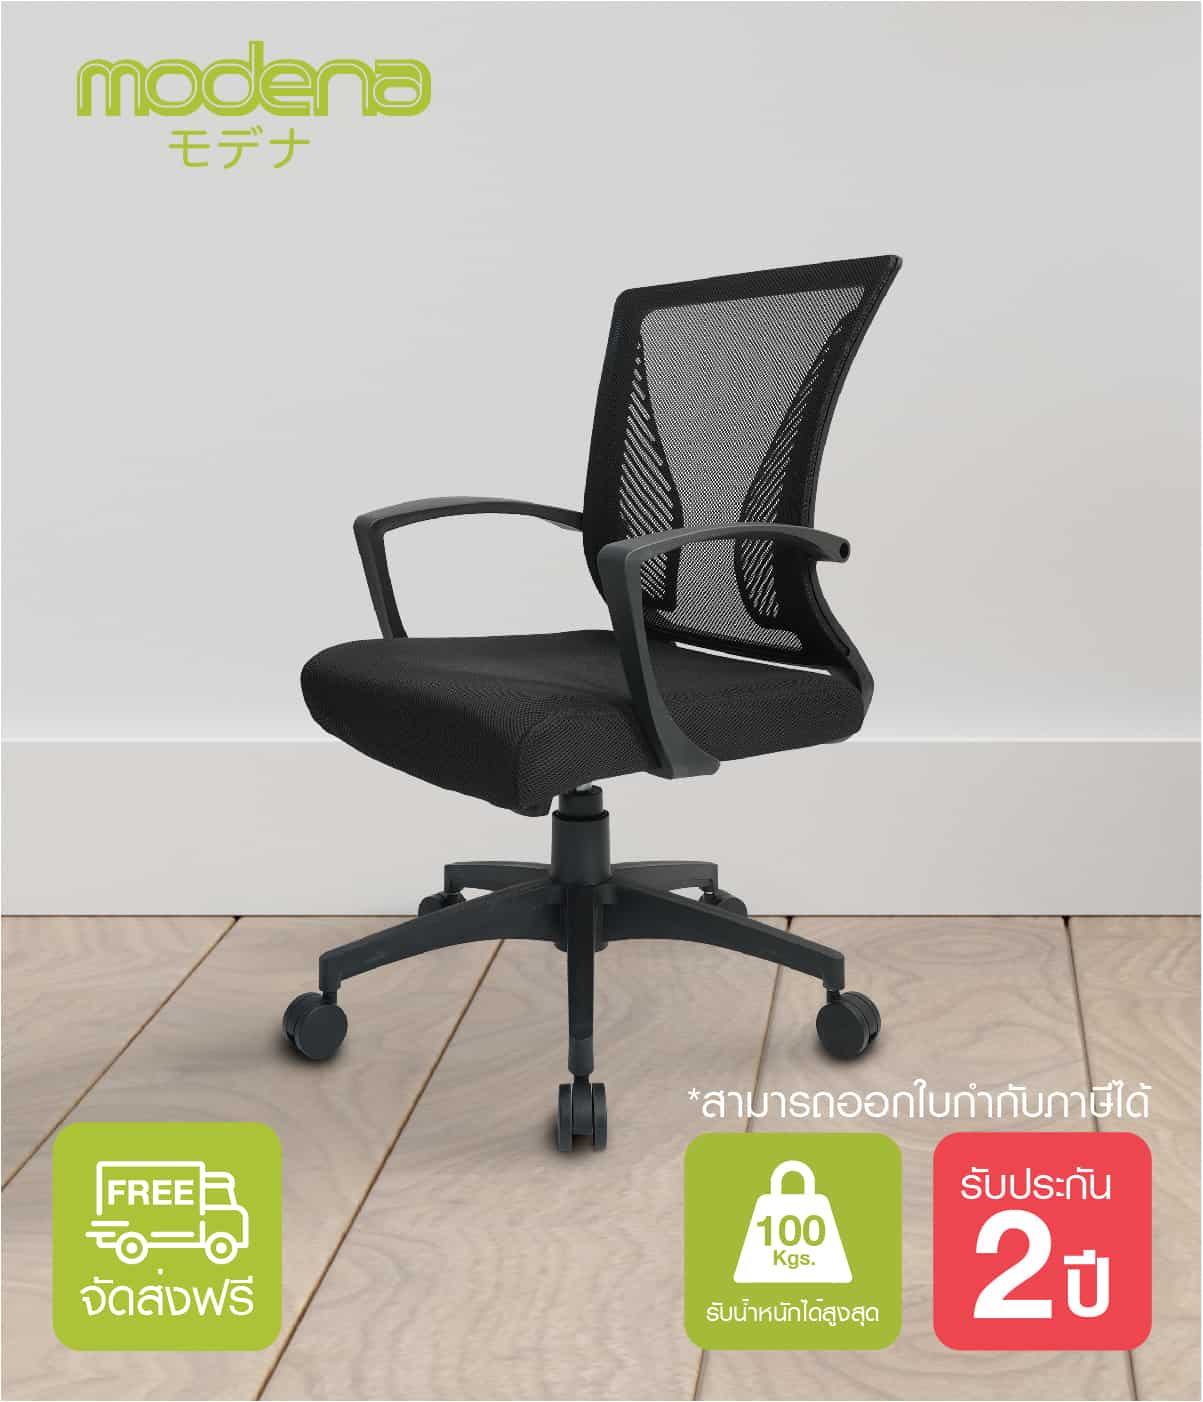 เก้าอี้สำนักงาน เก้าอี้เพื่อสุขภาพ รุ่น Wing - Modena เก้าอี้ทำงาน#1 ส่งฟรี